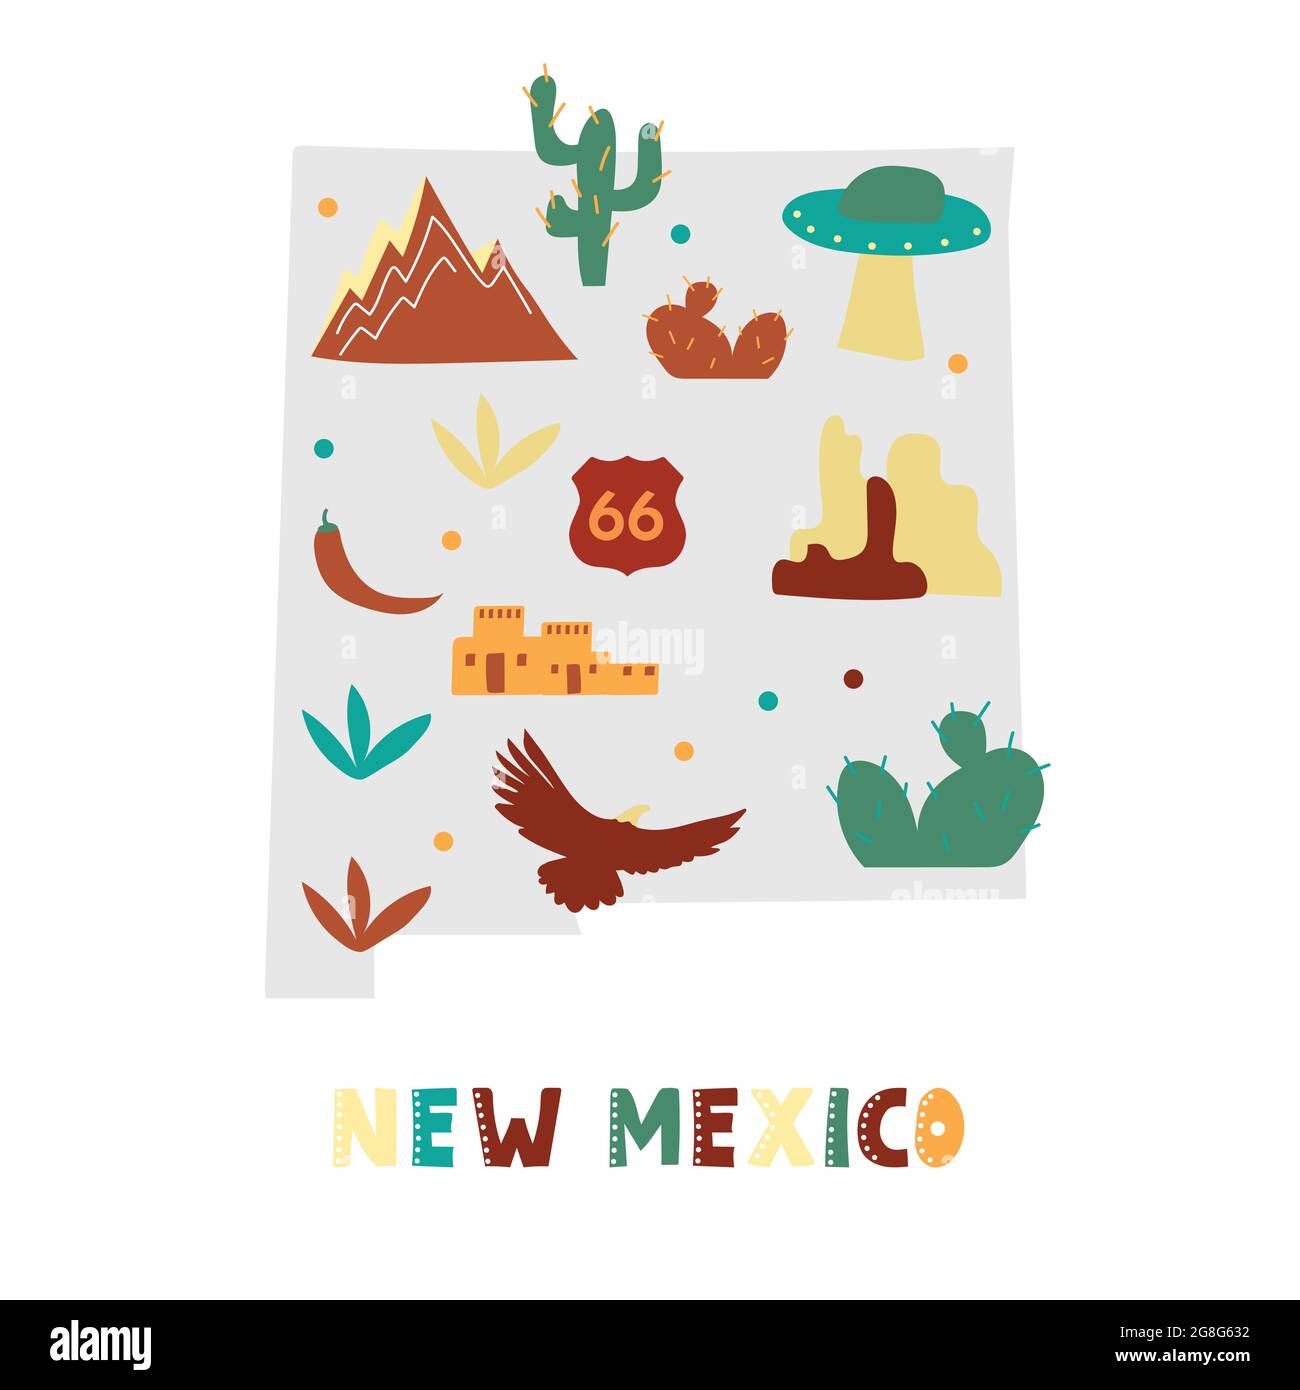 USA mappa raccolta. Simboli di stato e natura sulla silhouette grigia dello stato - New Mexico. Cartone animato stile semplice per la stampa Illustrazione Vettoriale